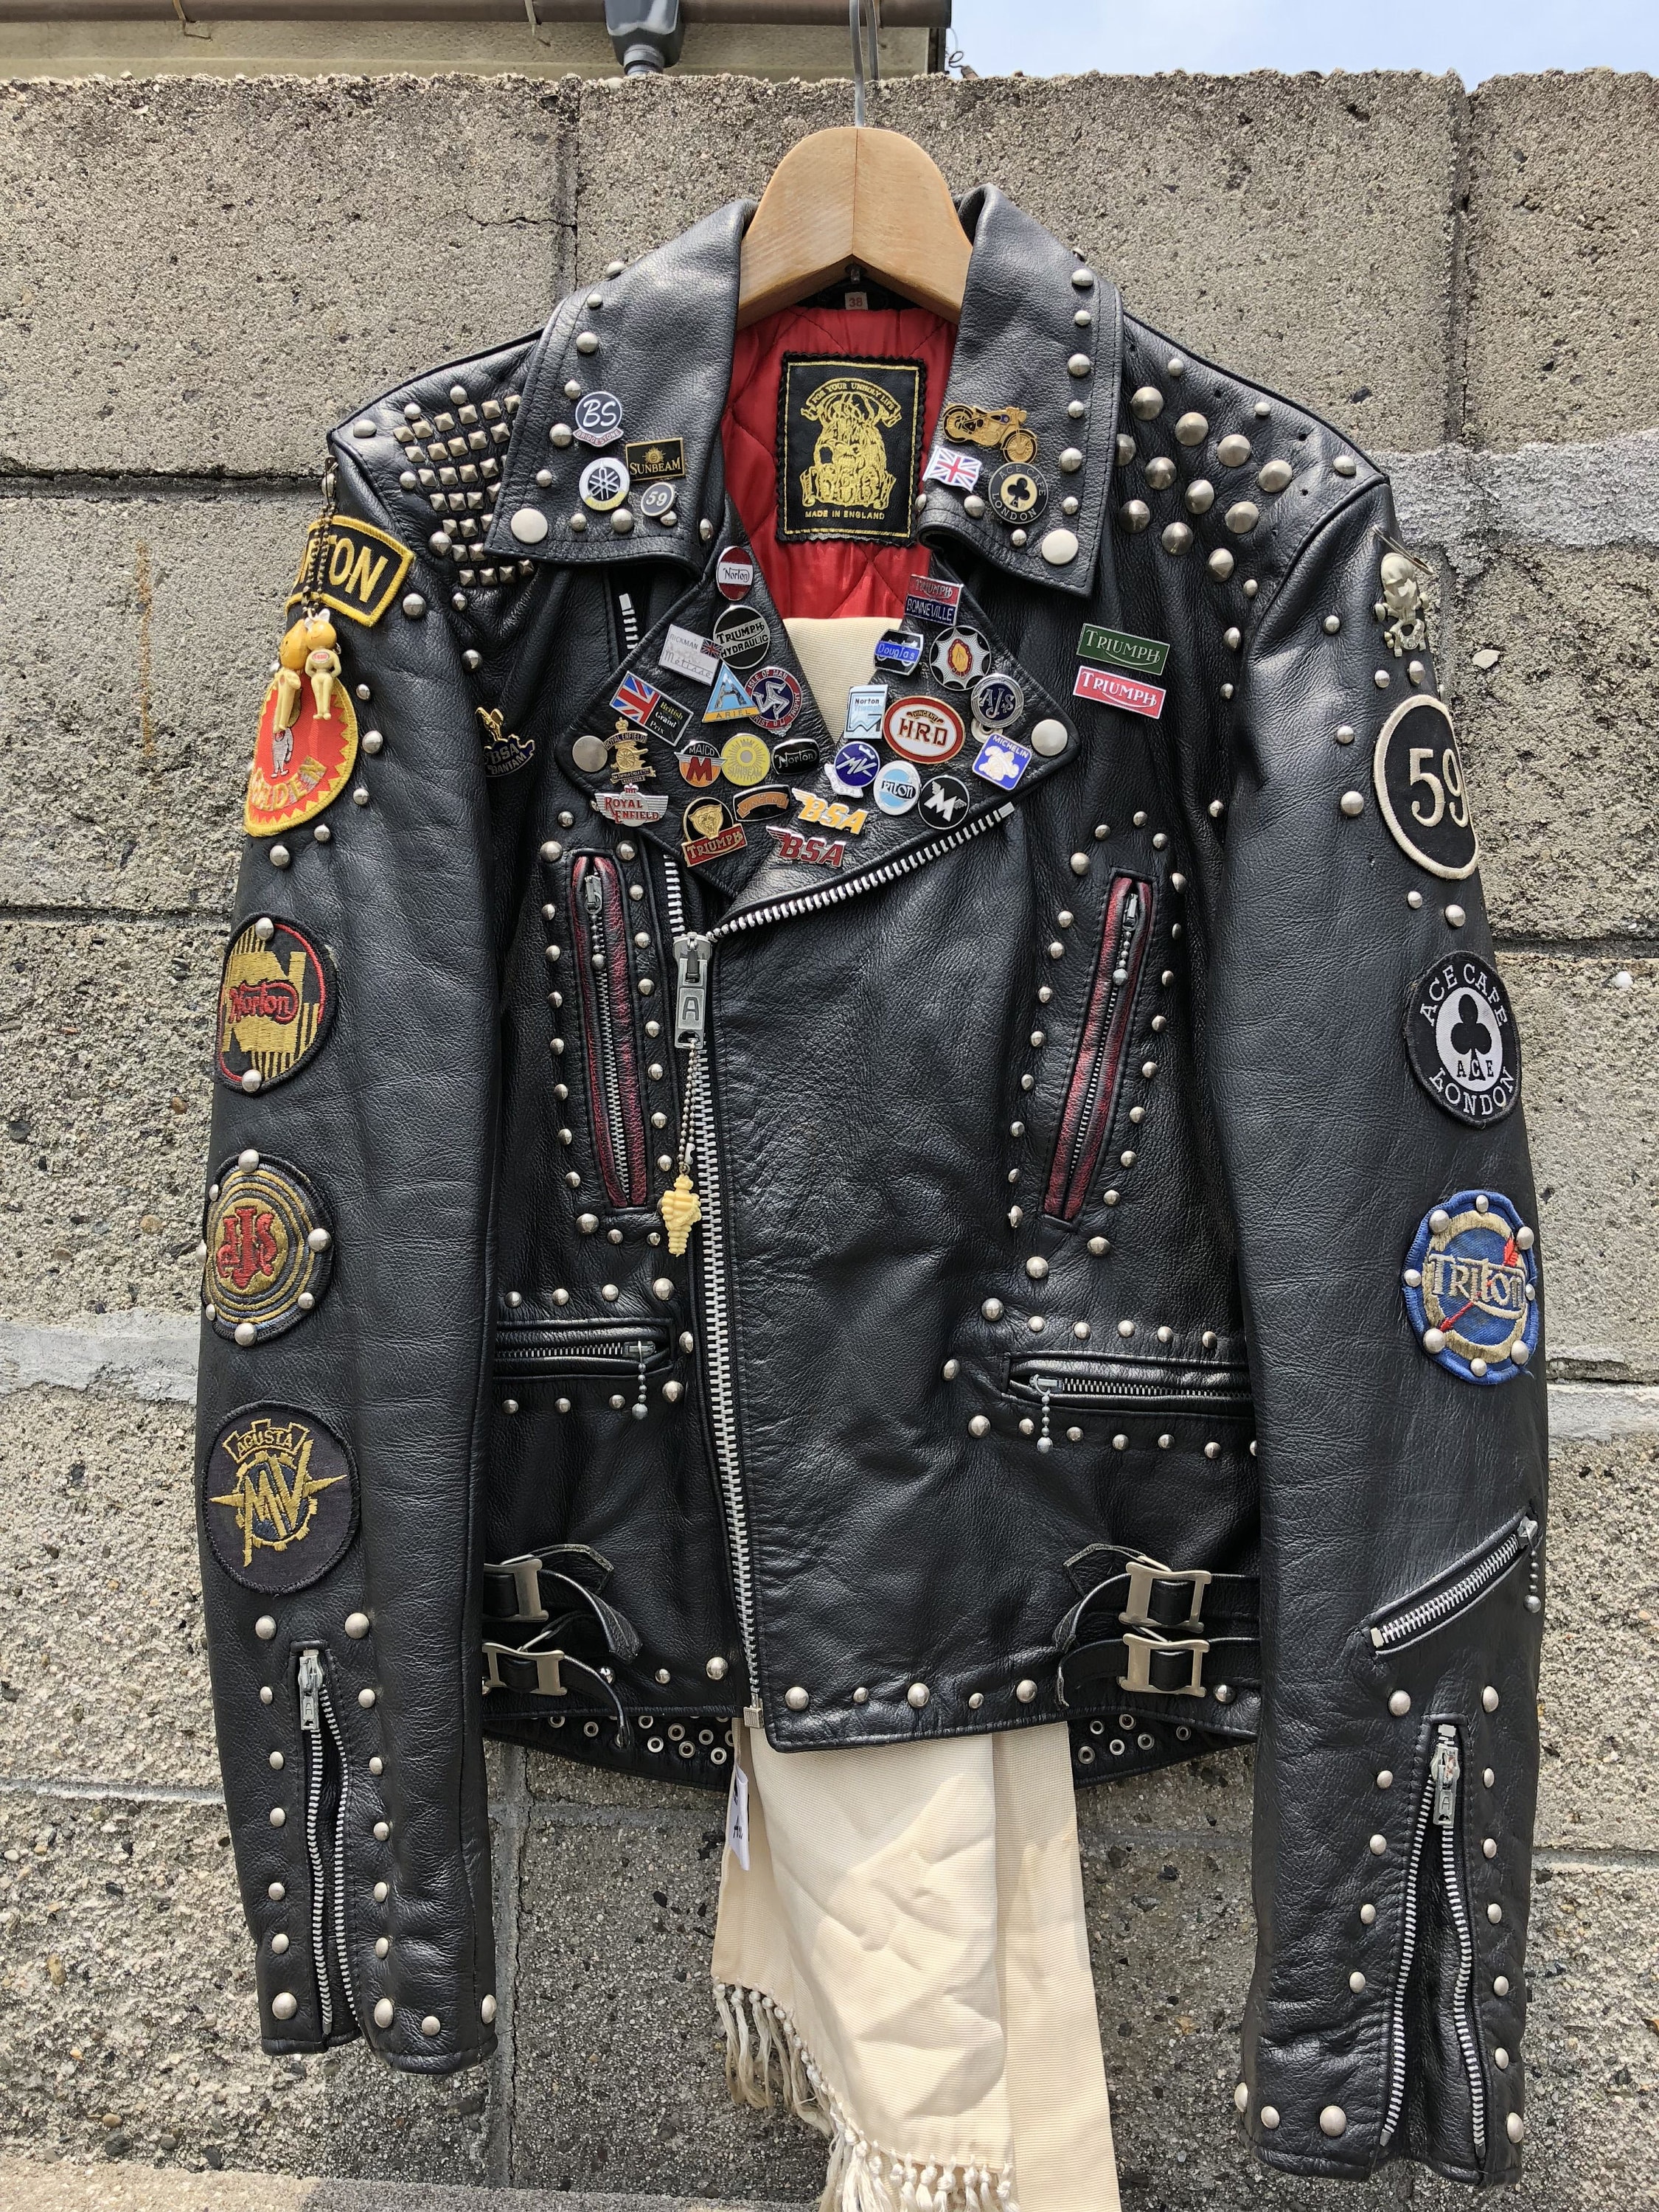 poshmarkshop Motorcycle Many Patches and Badges Studded Jacket, Customize Brando Gothic Jacket, Personalized Cowhide Leather Jacket, Punk Fashion Jacket